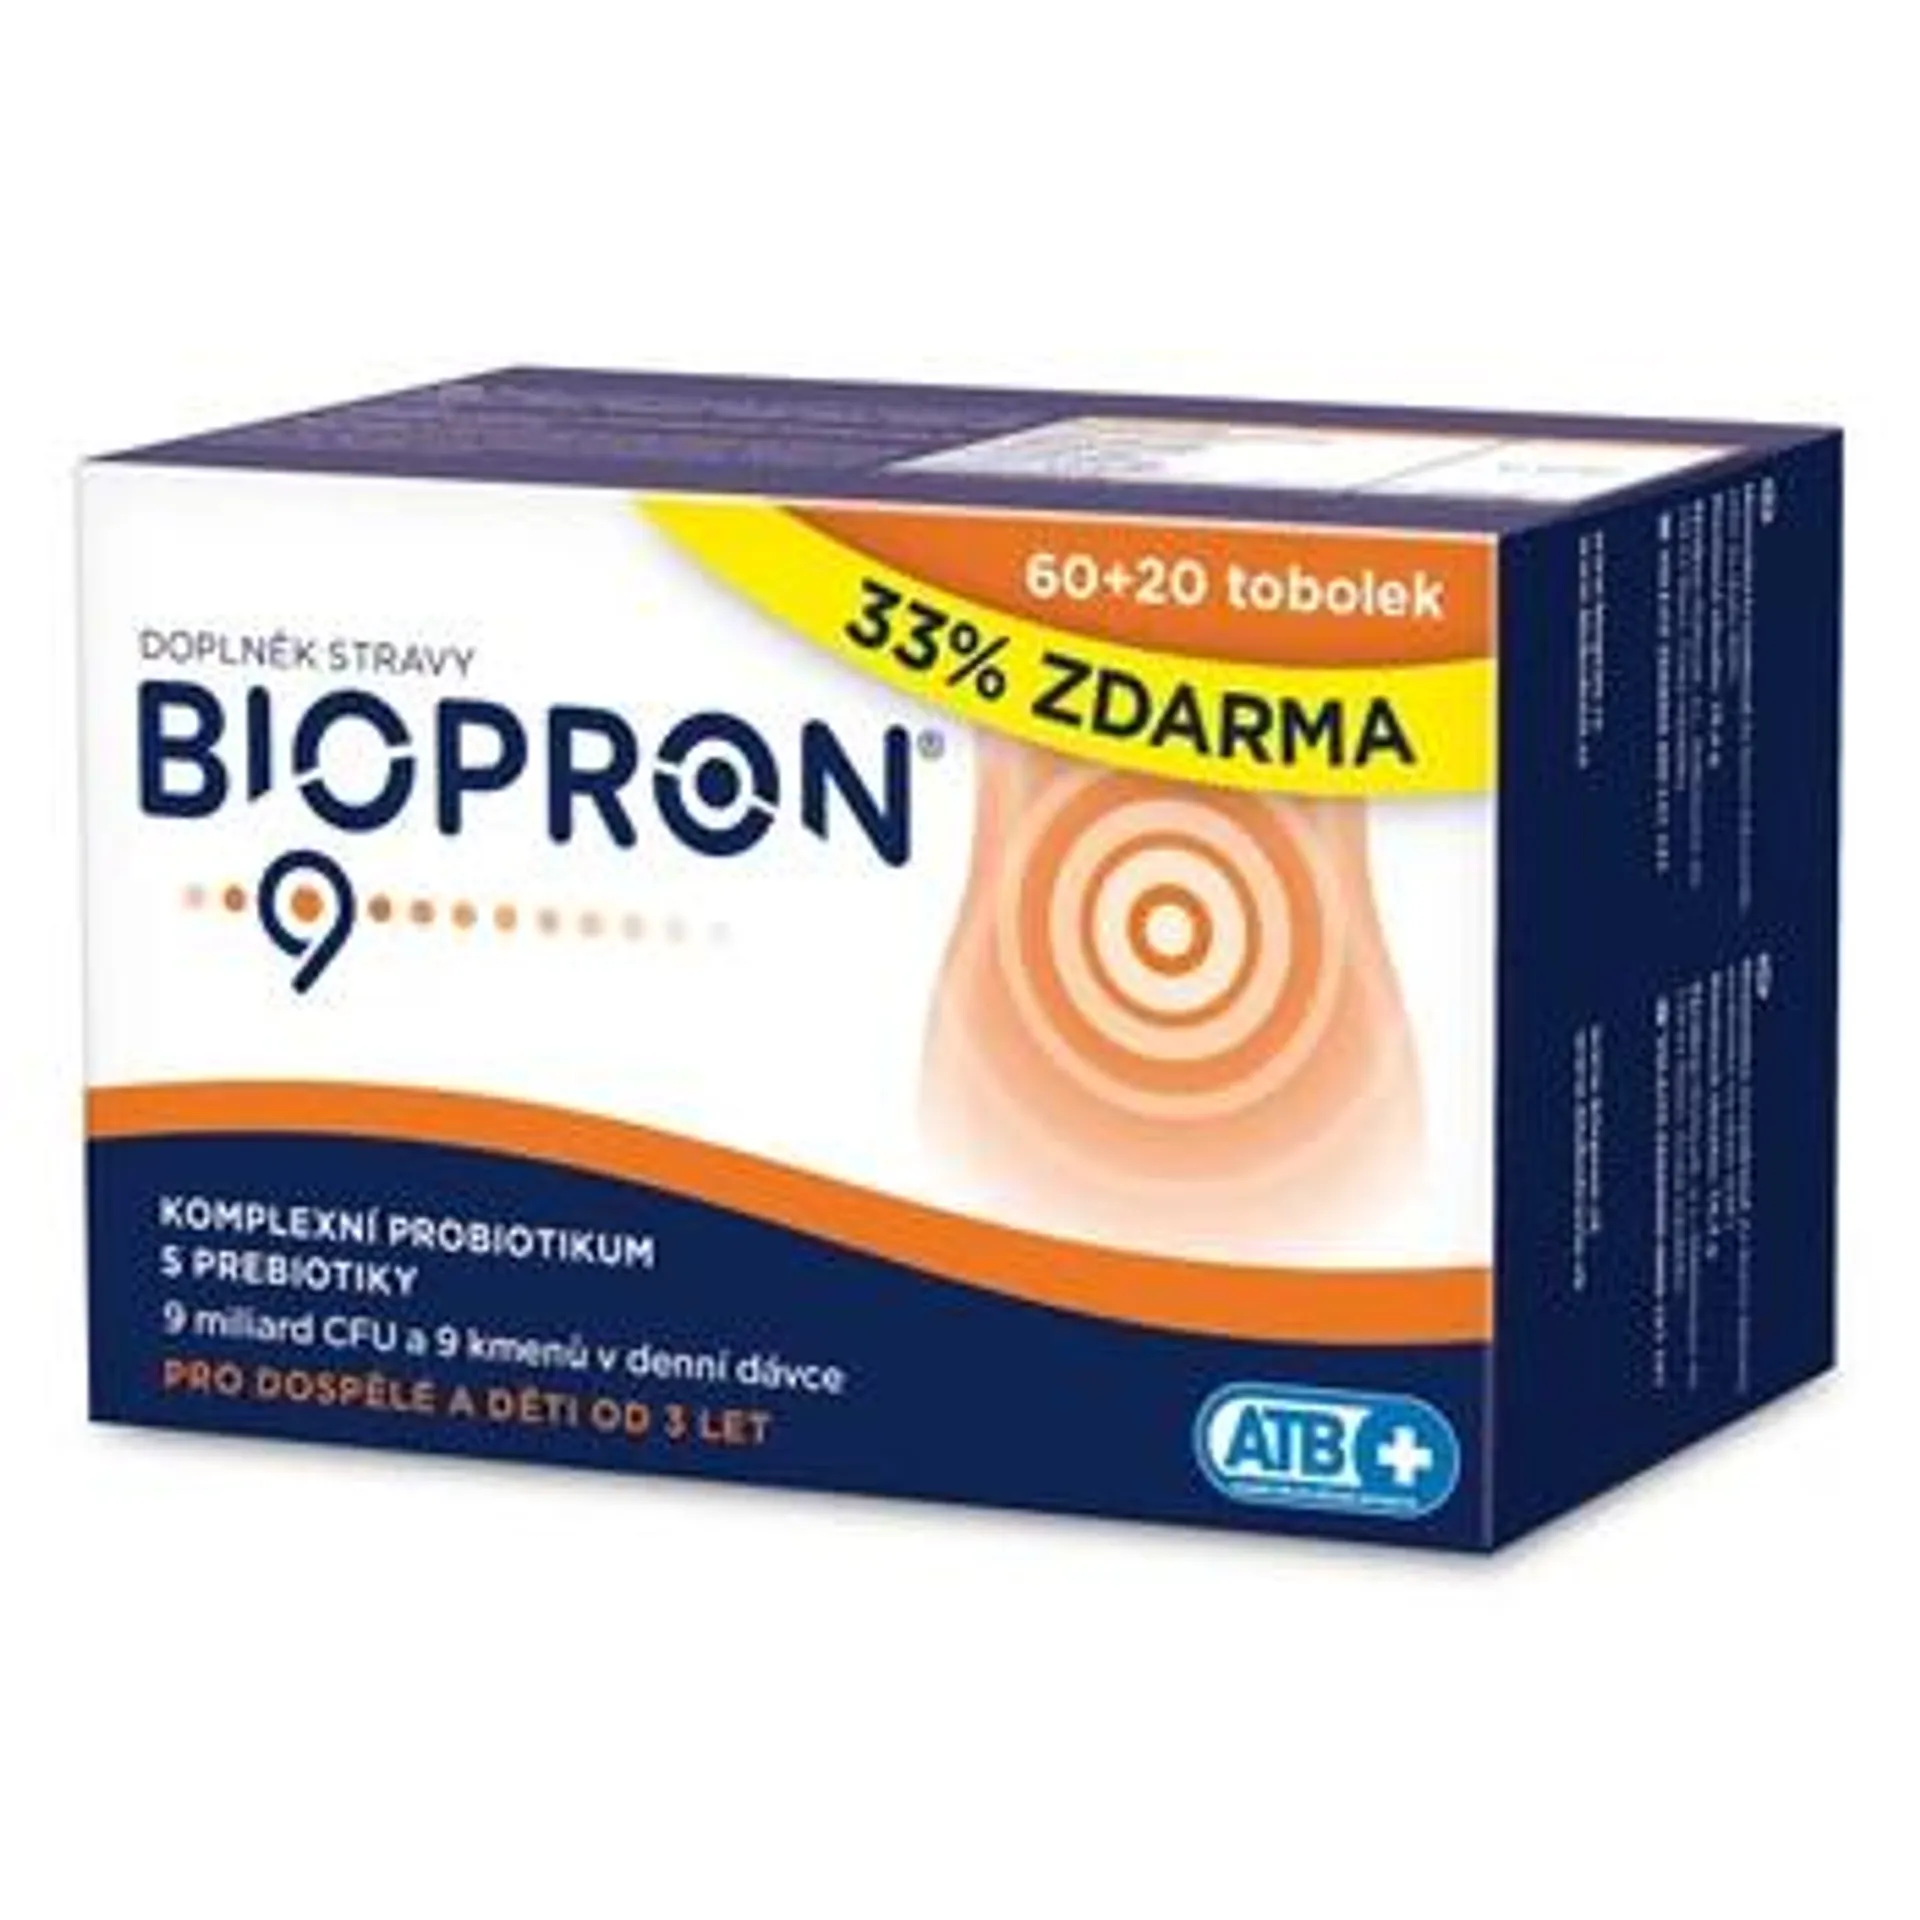 Biopron 9 60+20 tobolek